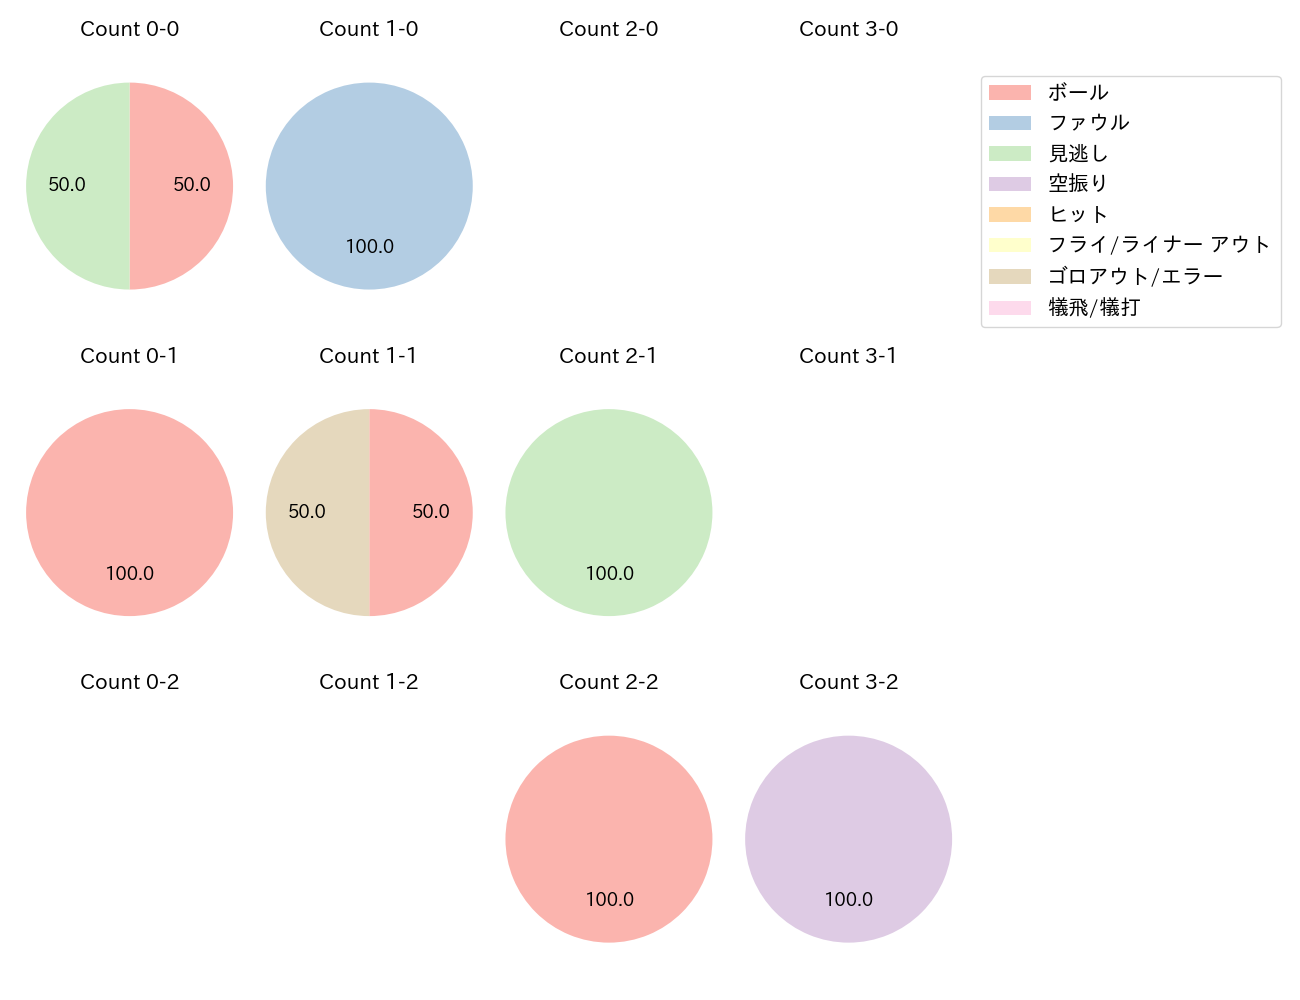 上野 響平の球数分布(2022年5月)